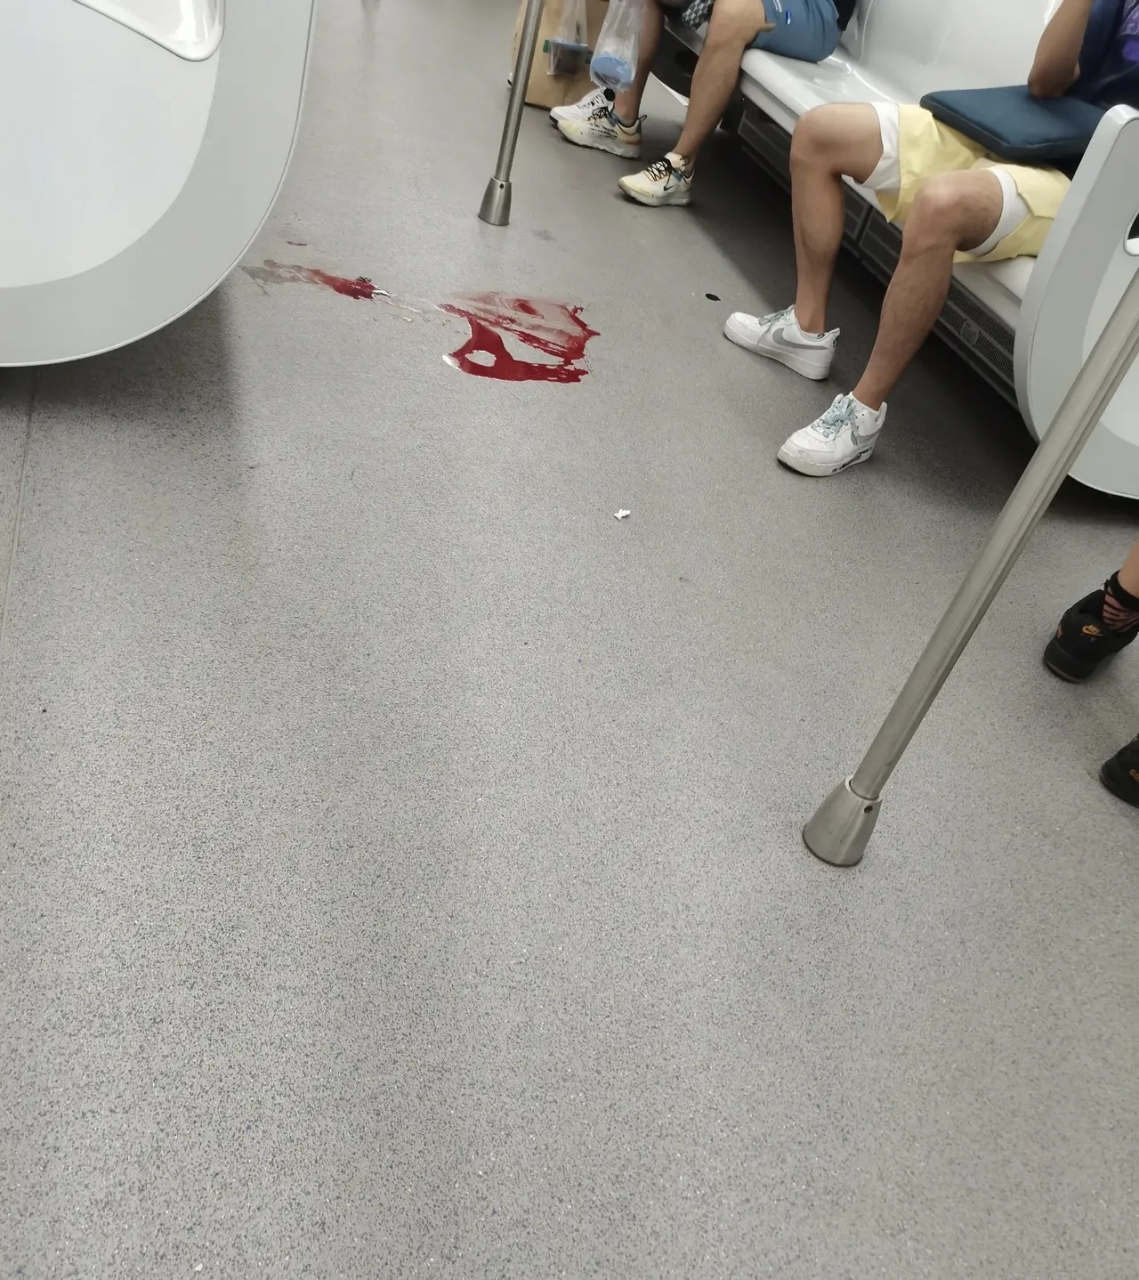 地铁二号线,有个女的突然吐血昏迷,直接倒在车厢地上,但是特别吓人,一